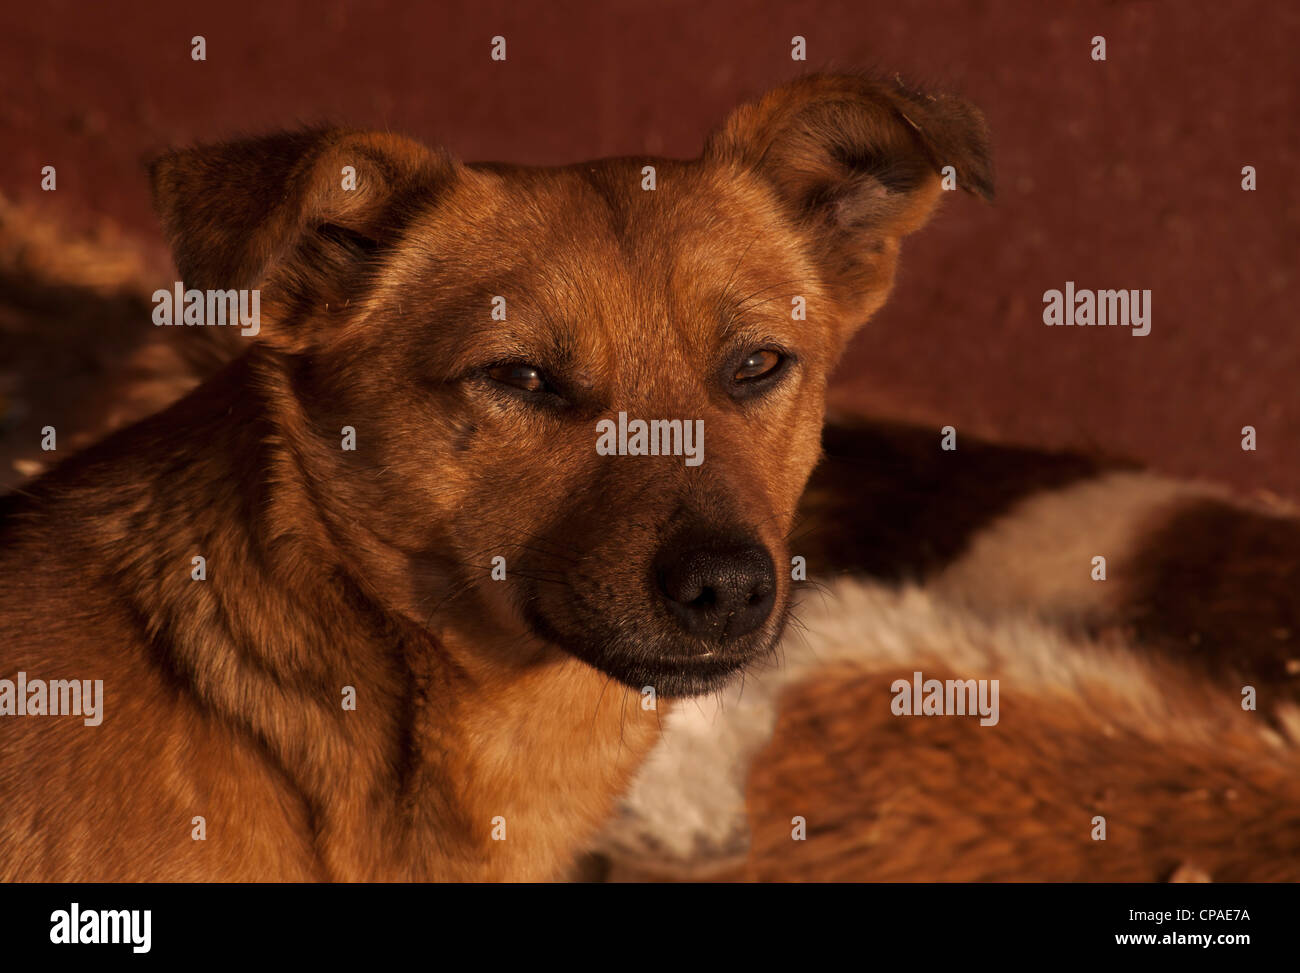 Dog Stock Photo